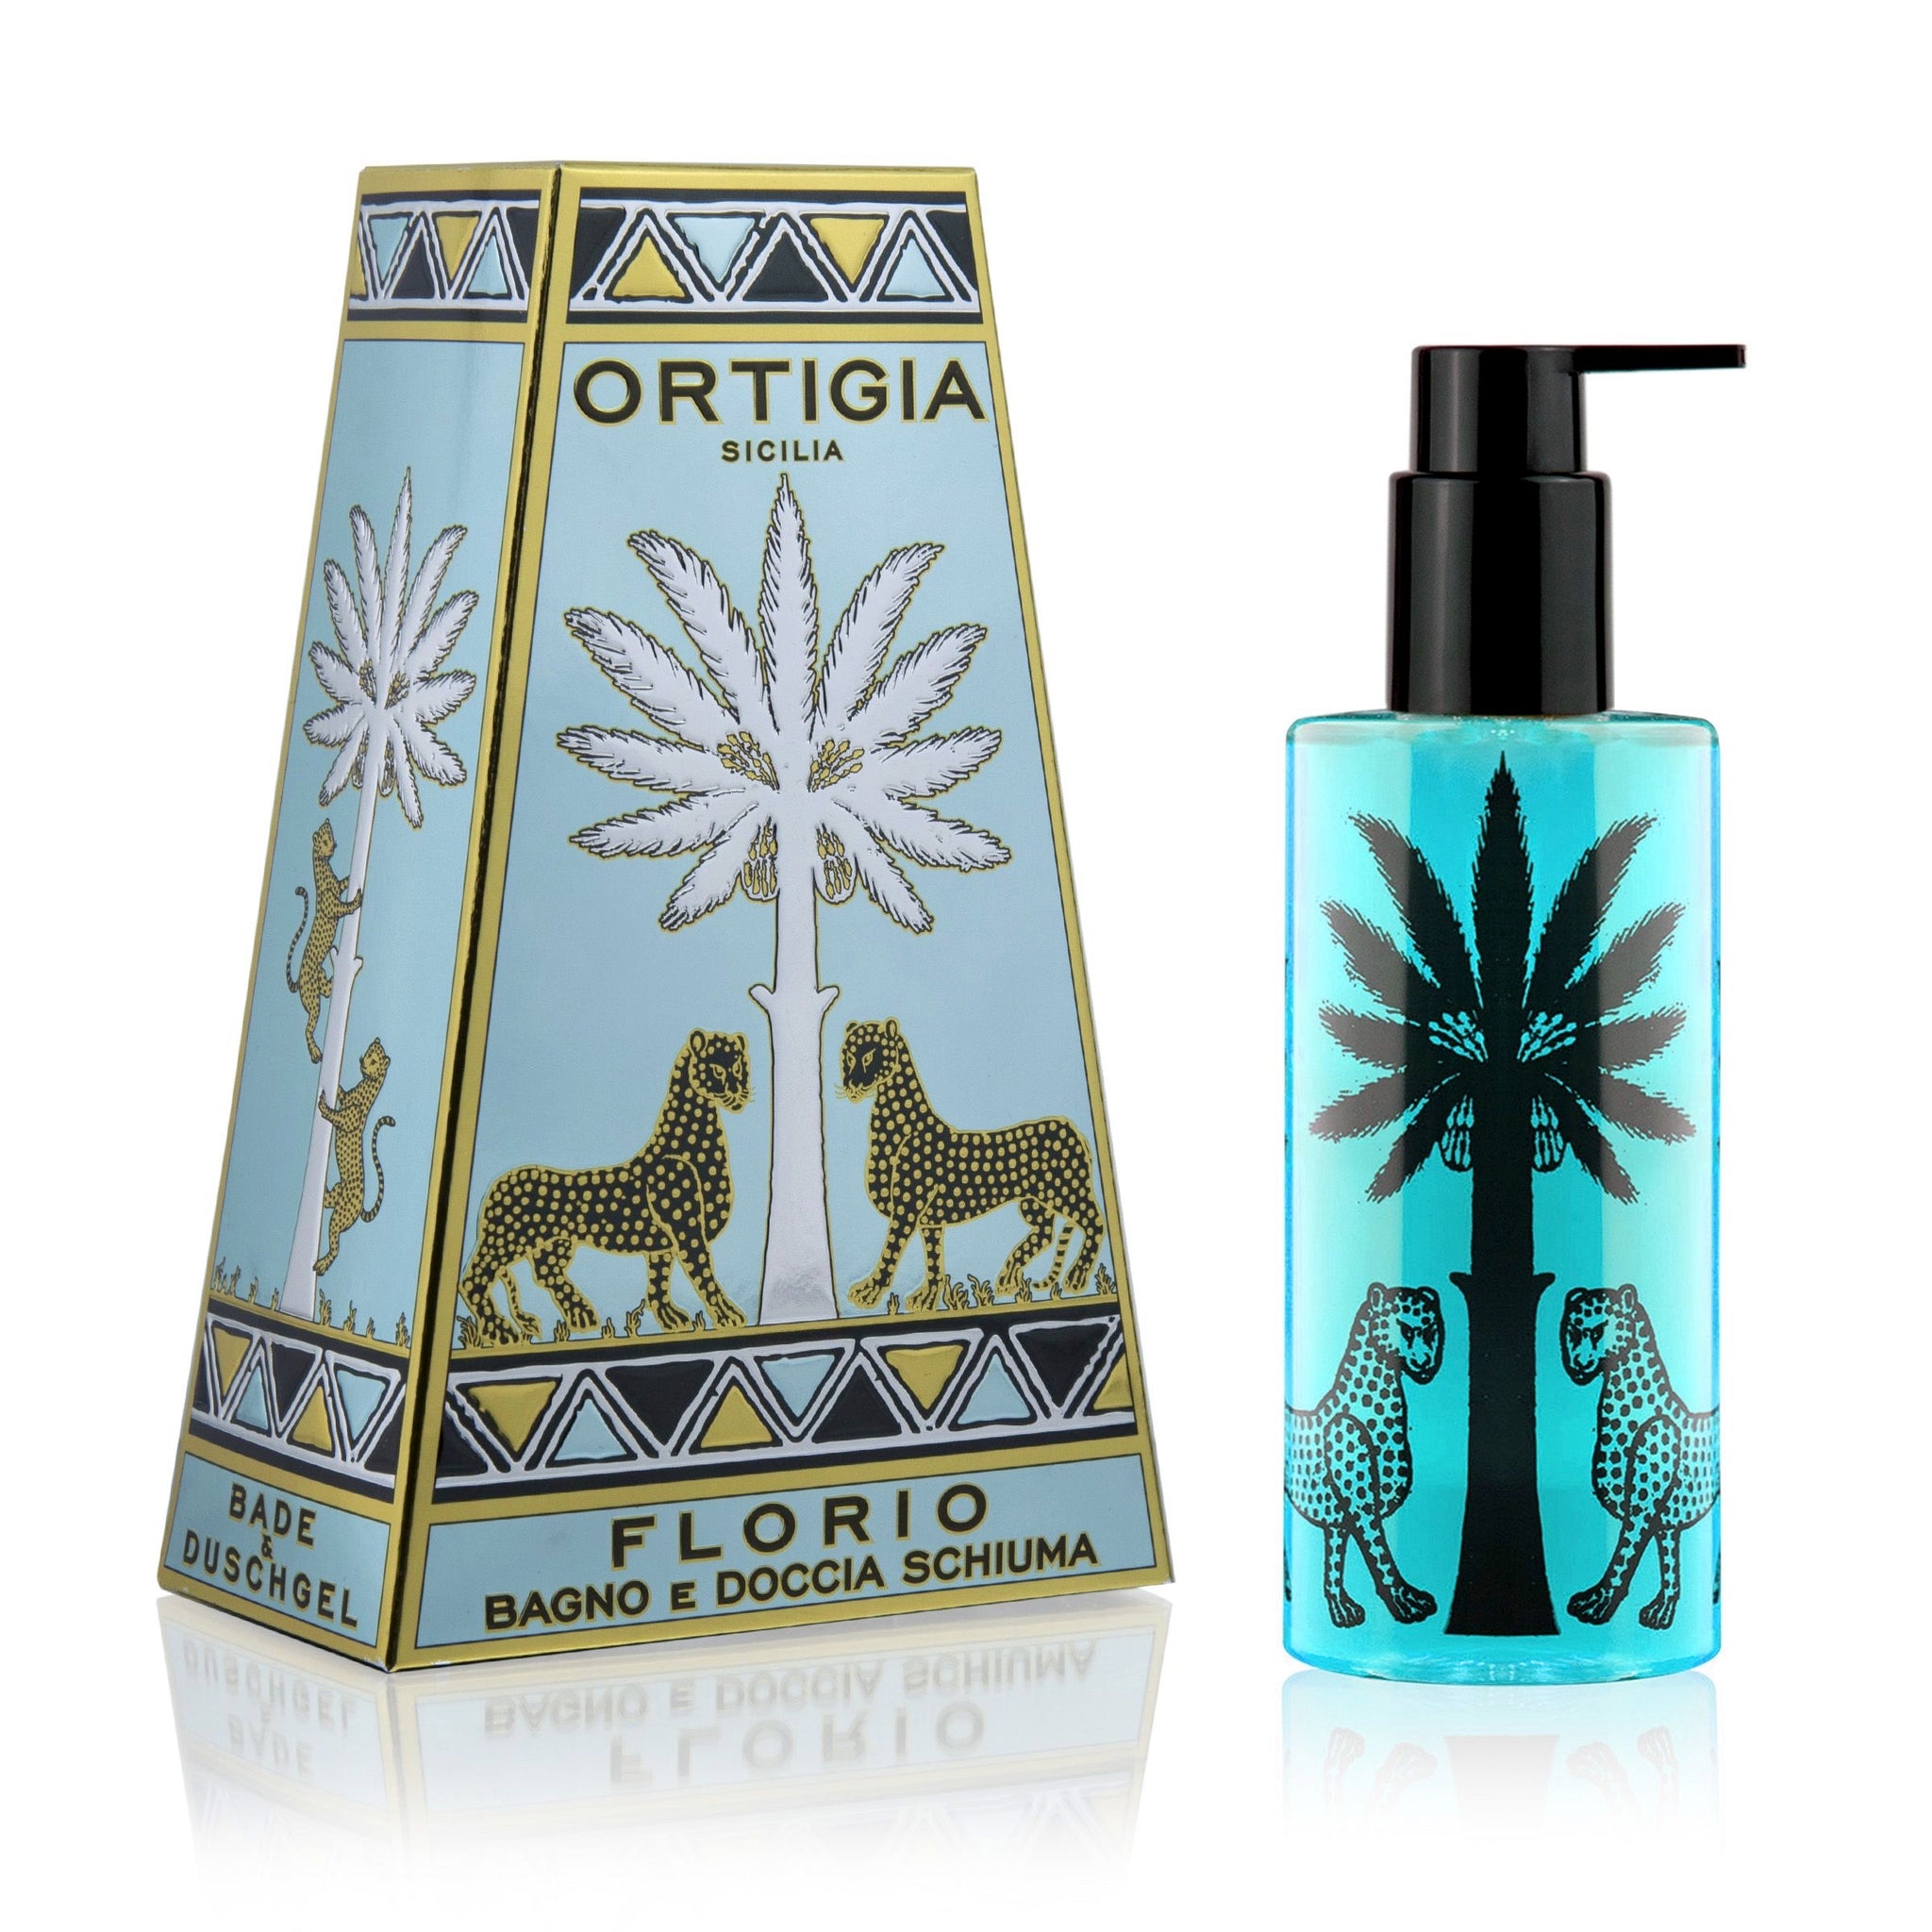 Ortigia Florio Shower Gel 250ml